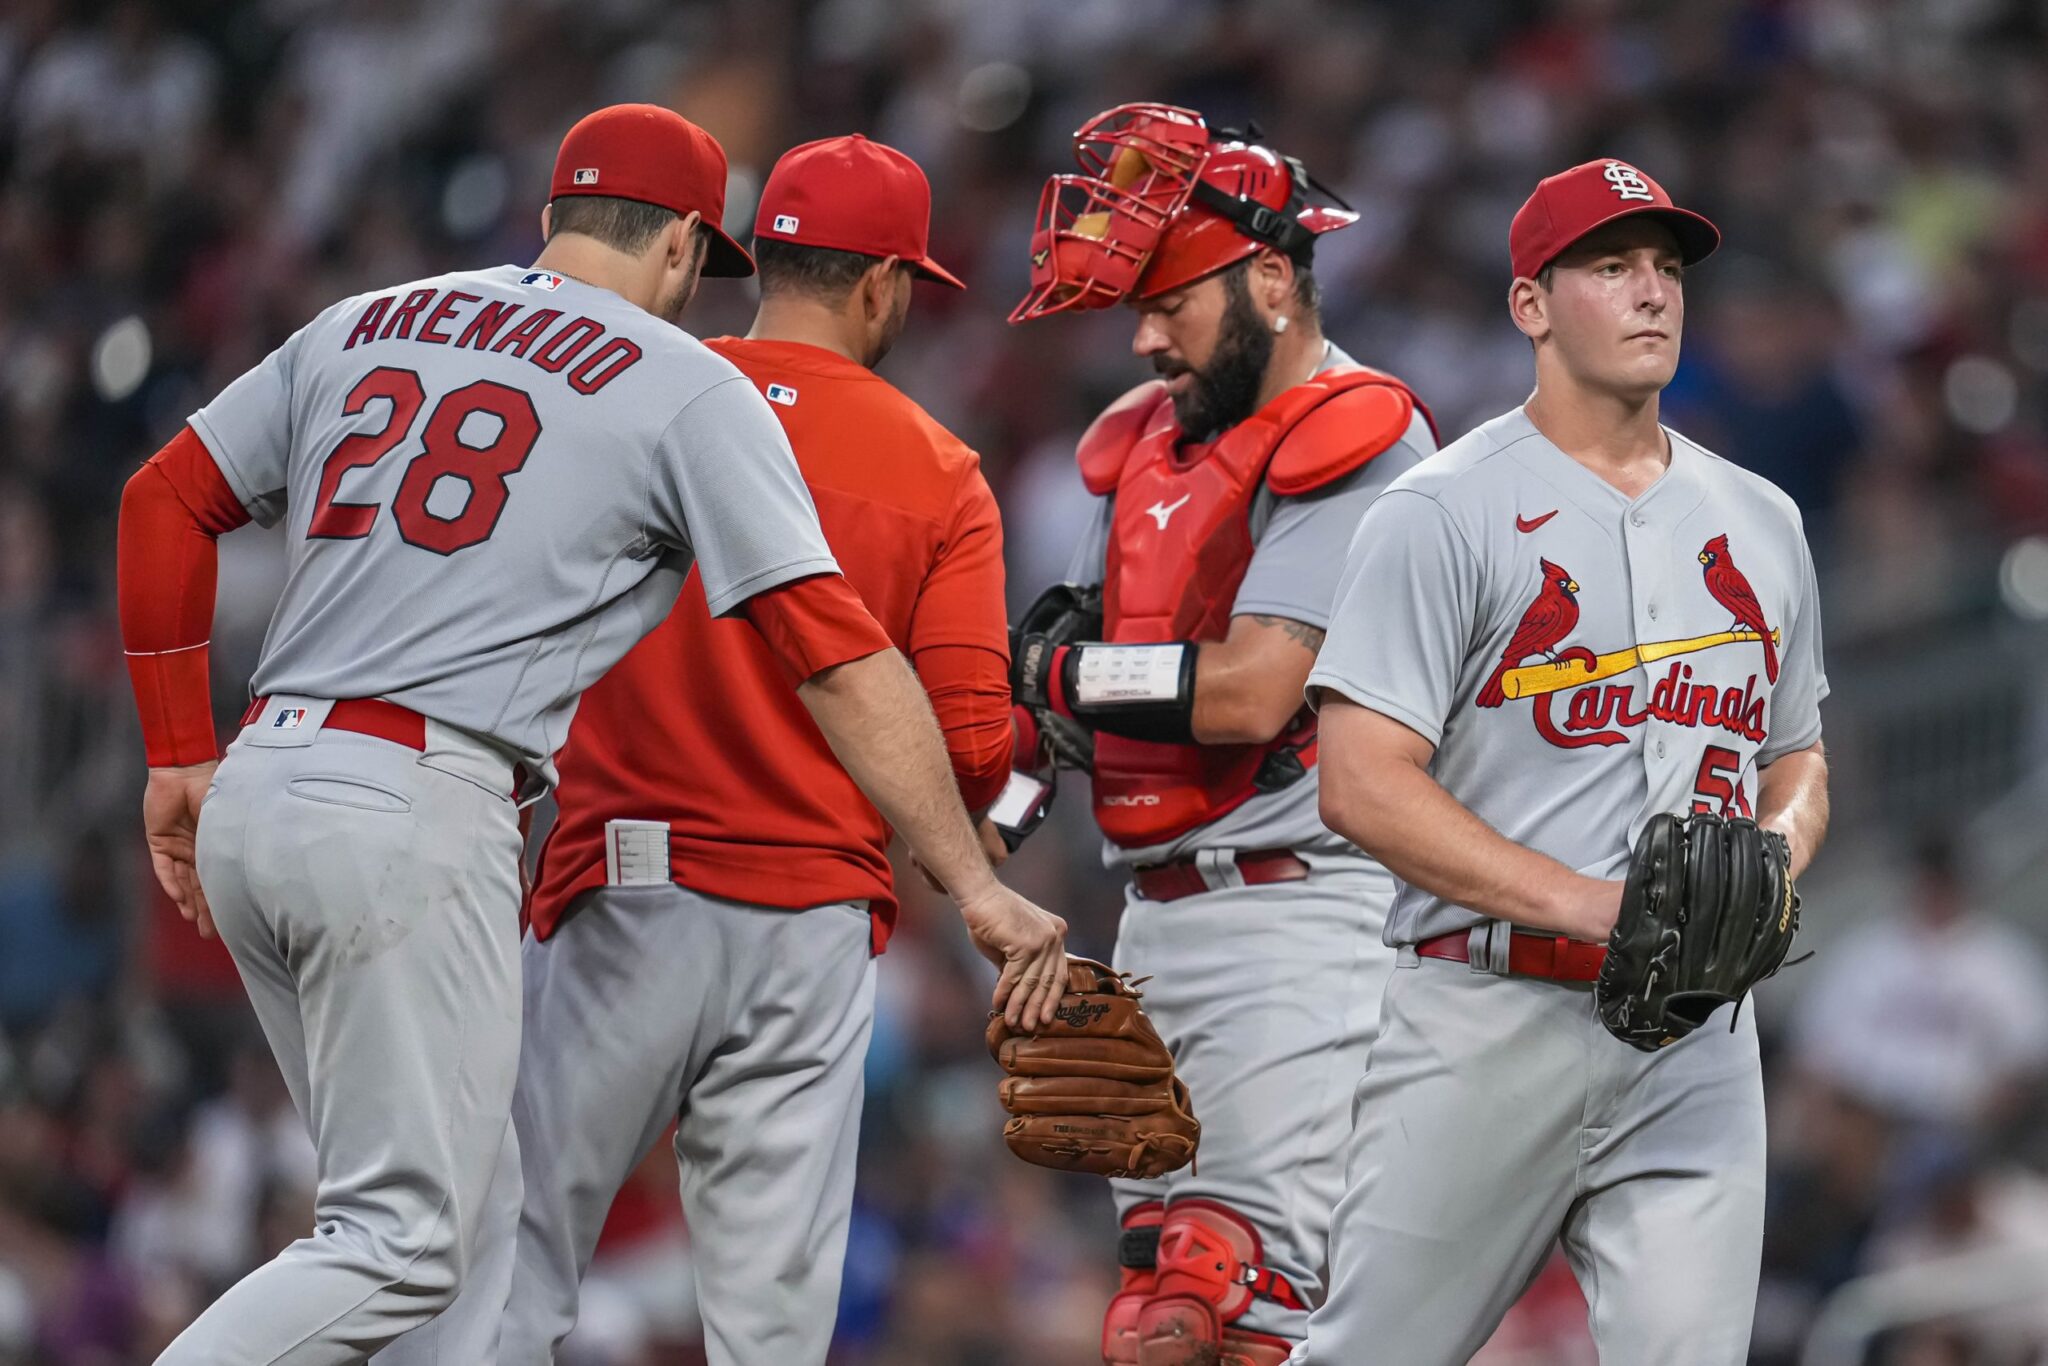 With Steven Matz injured, Cardinals must again address starting